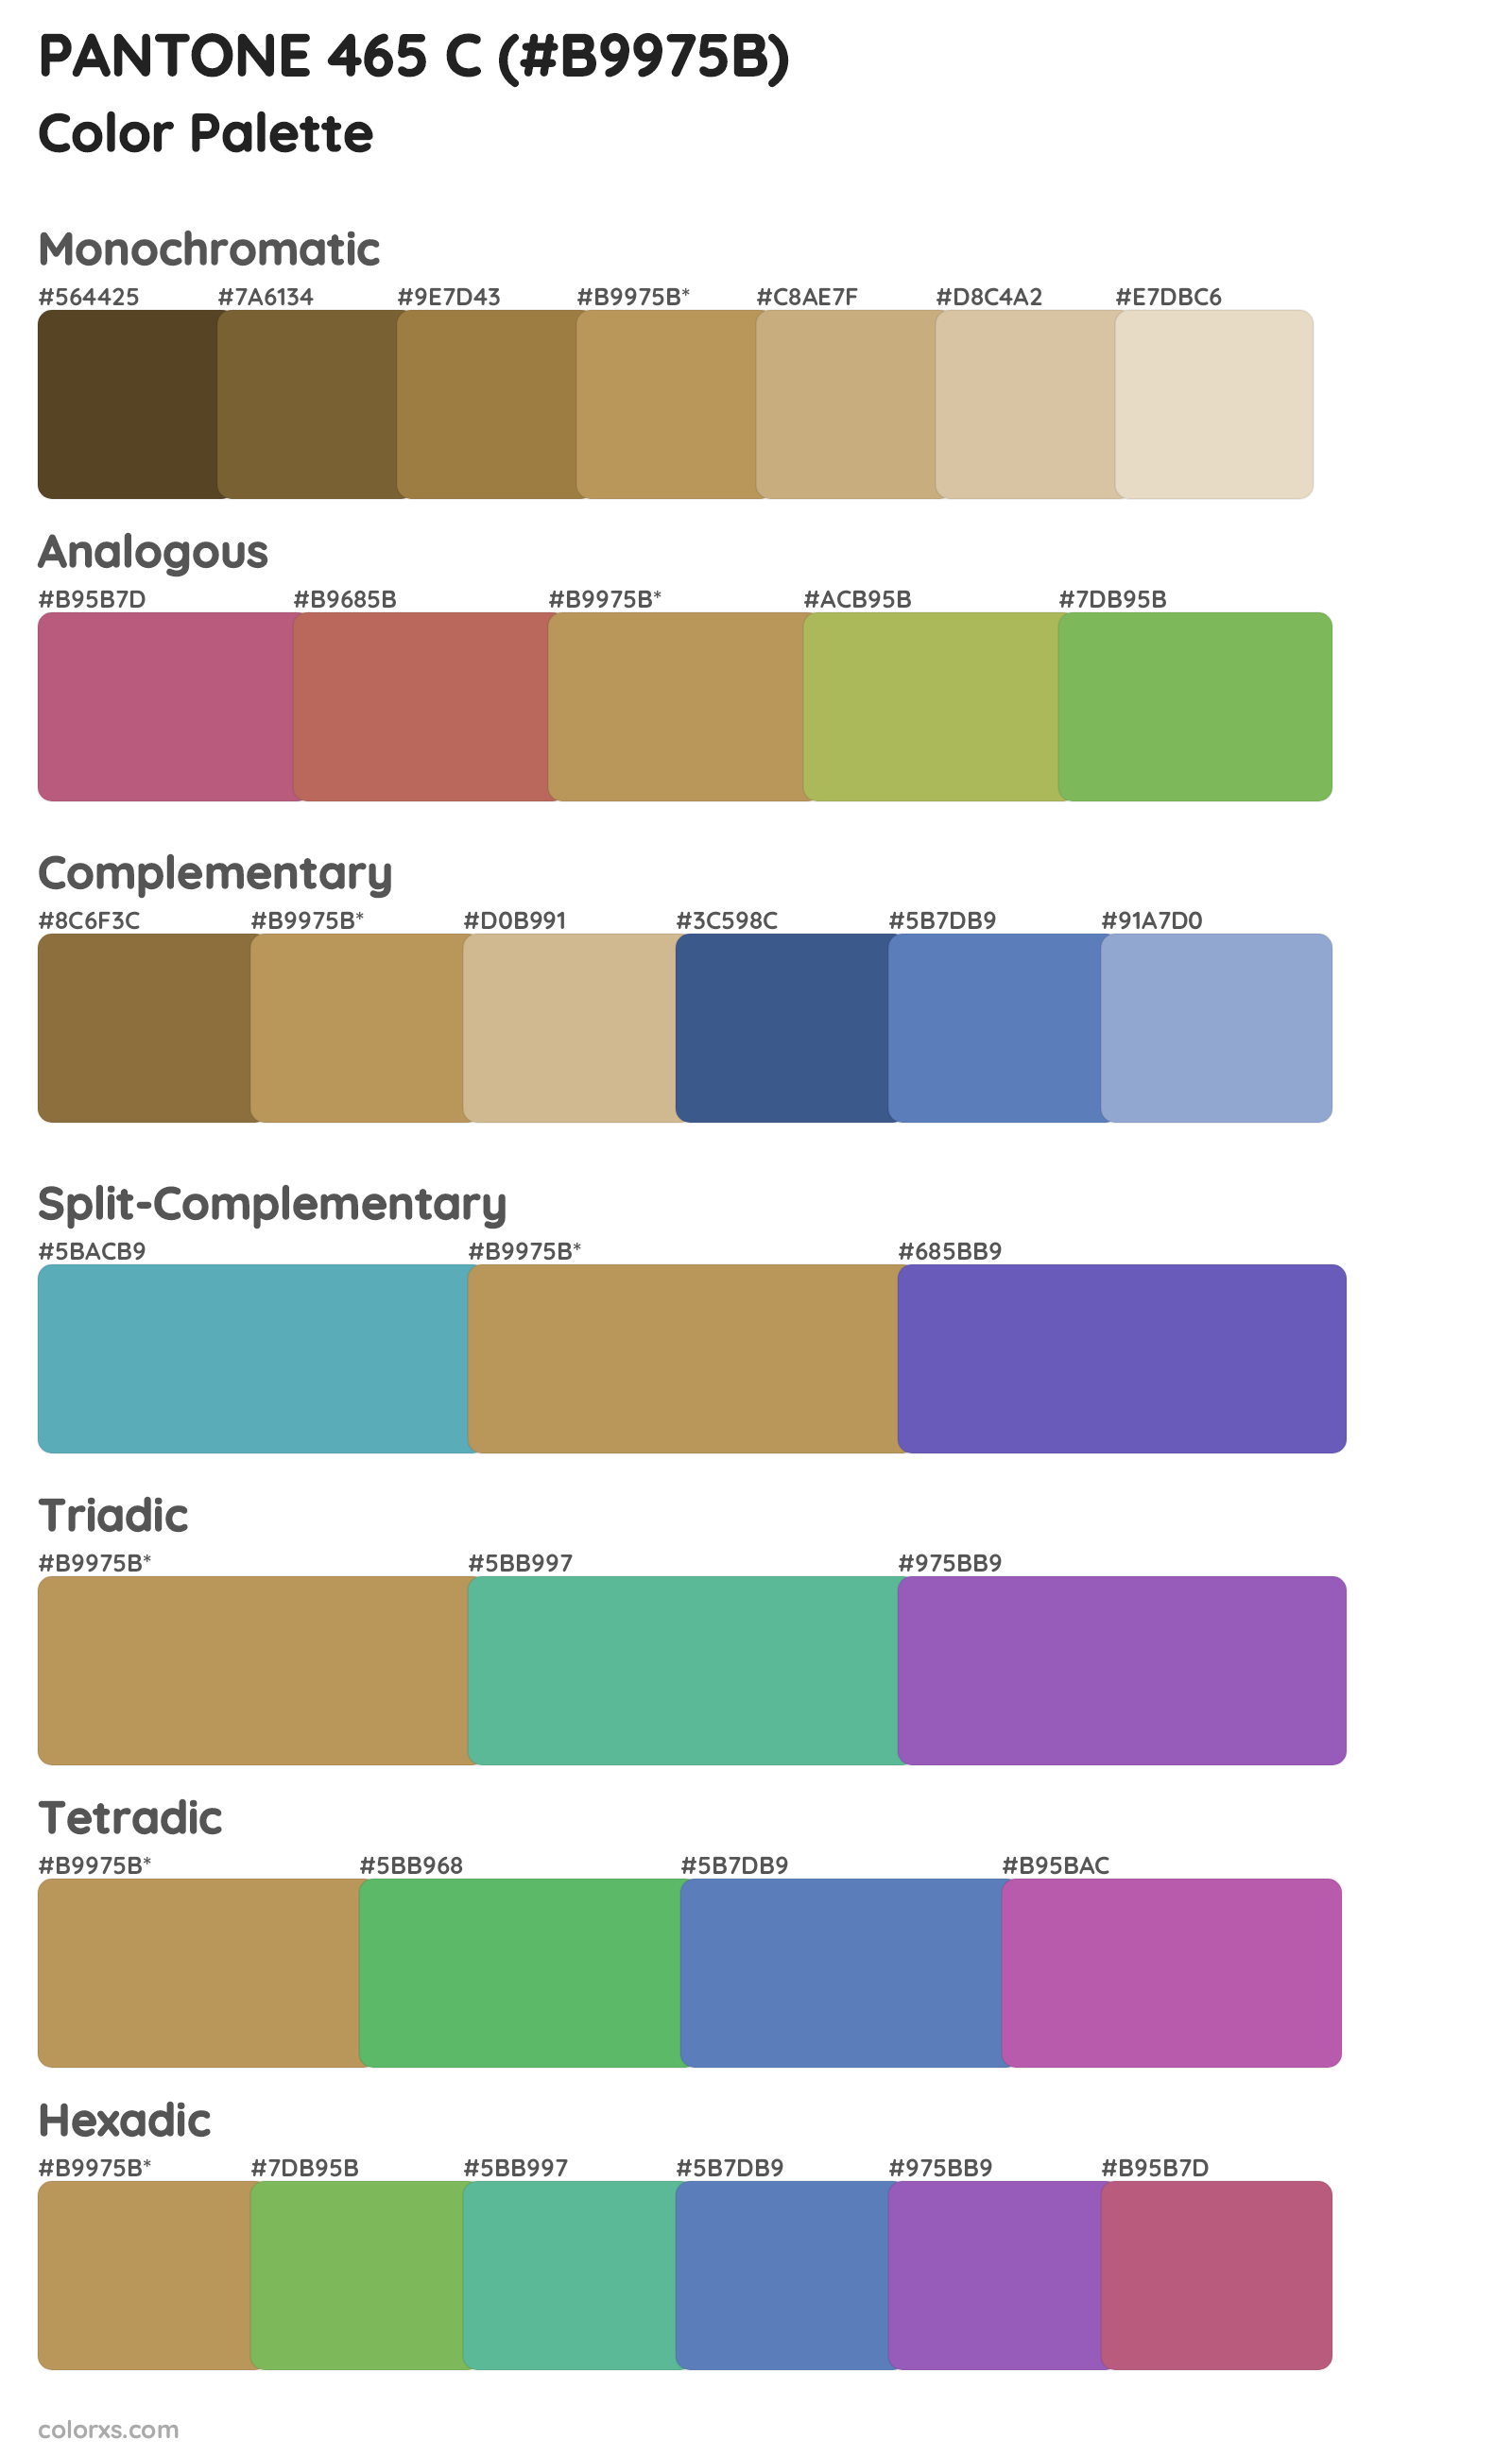 PANTONE 465 C Color Scheme Palettes